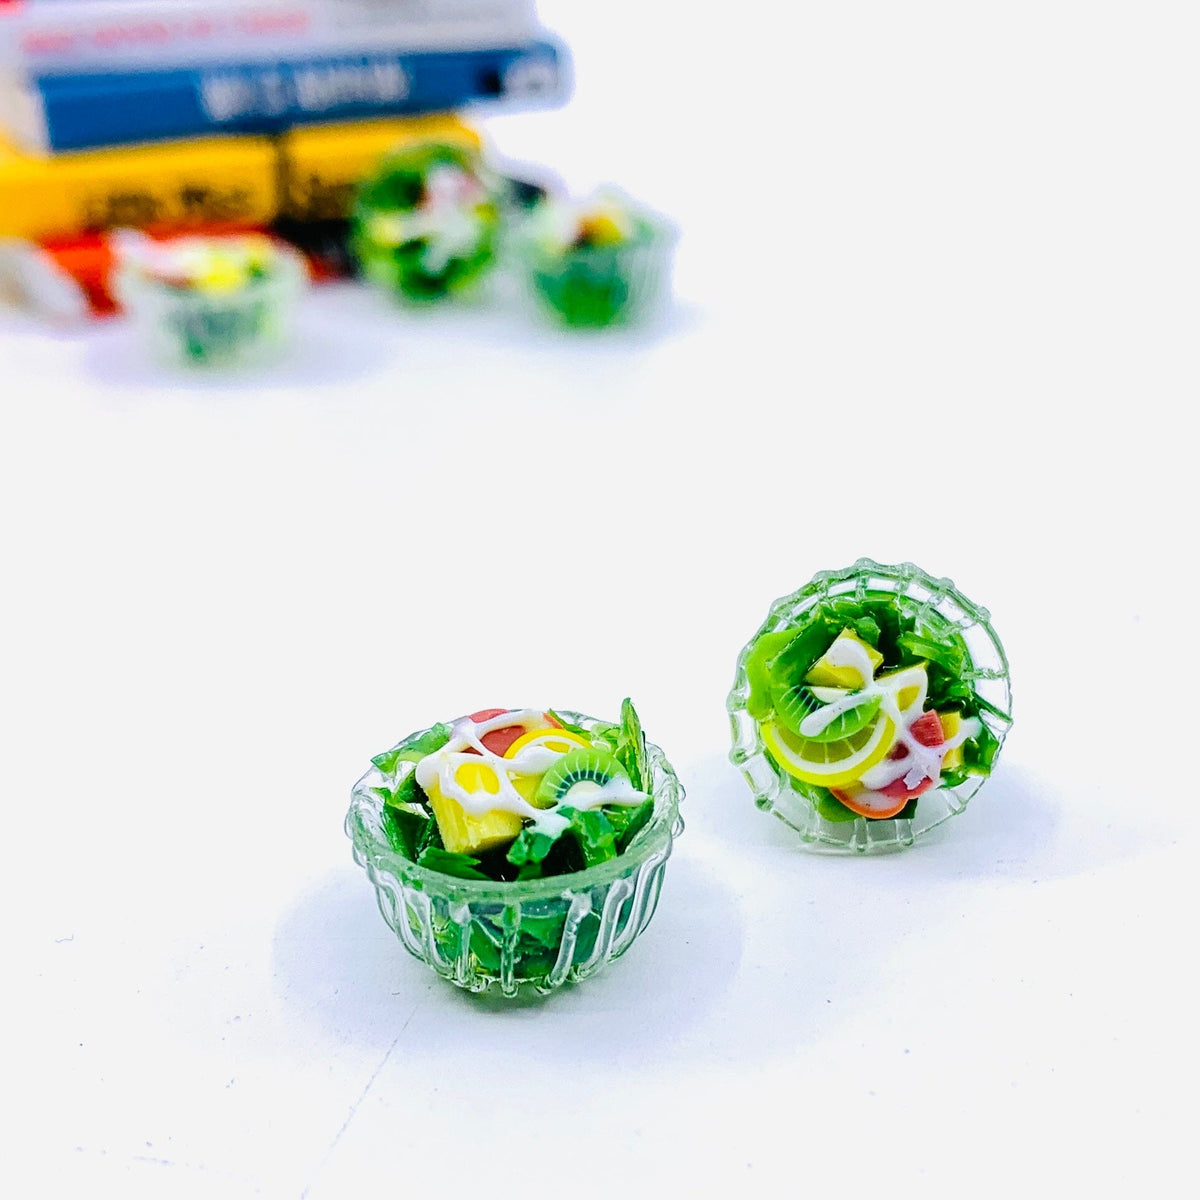 Teeniest Bowl of Salad 168 Miniature - 